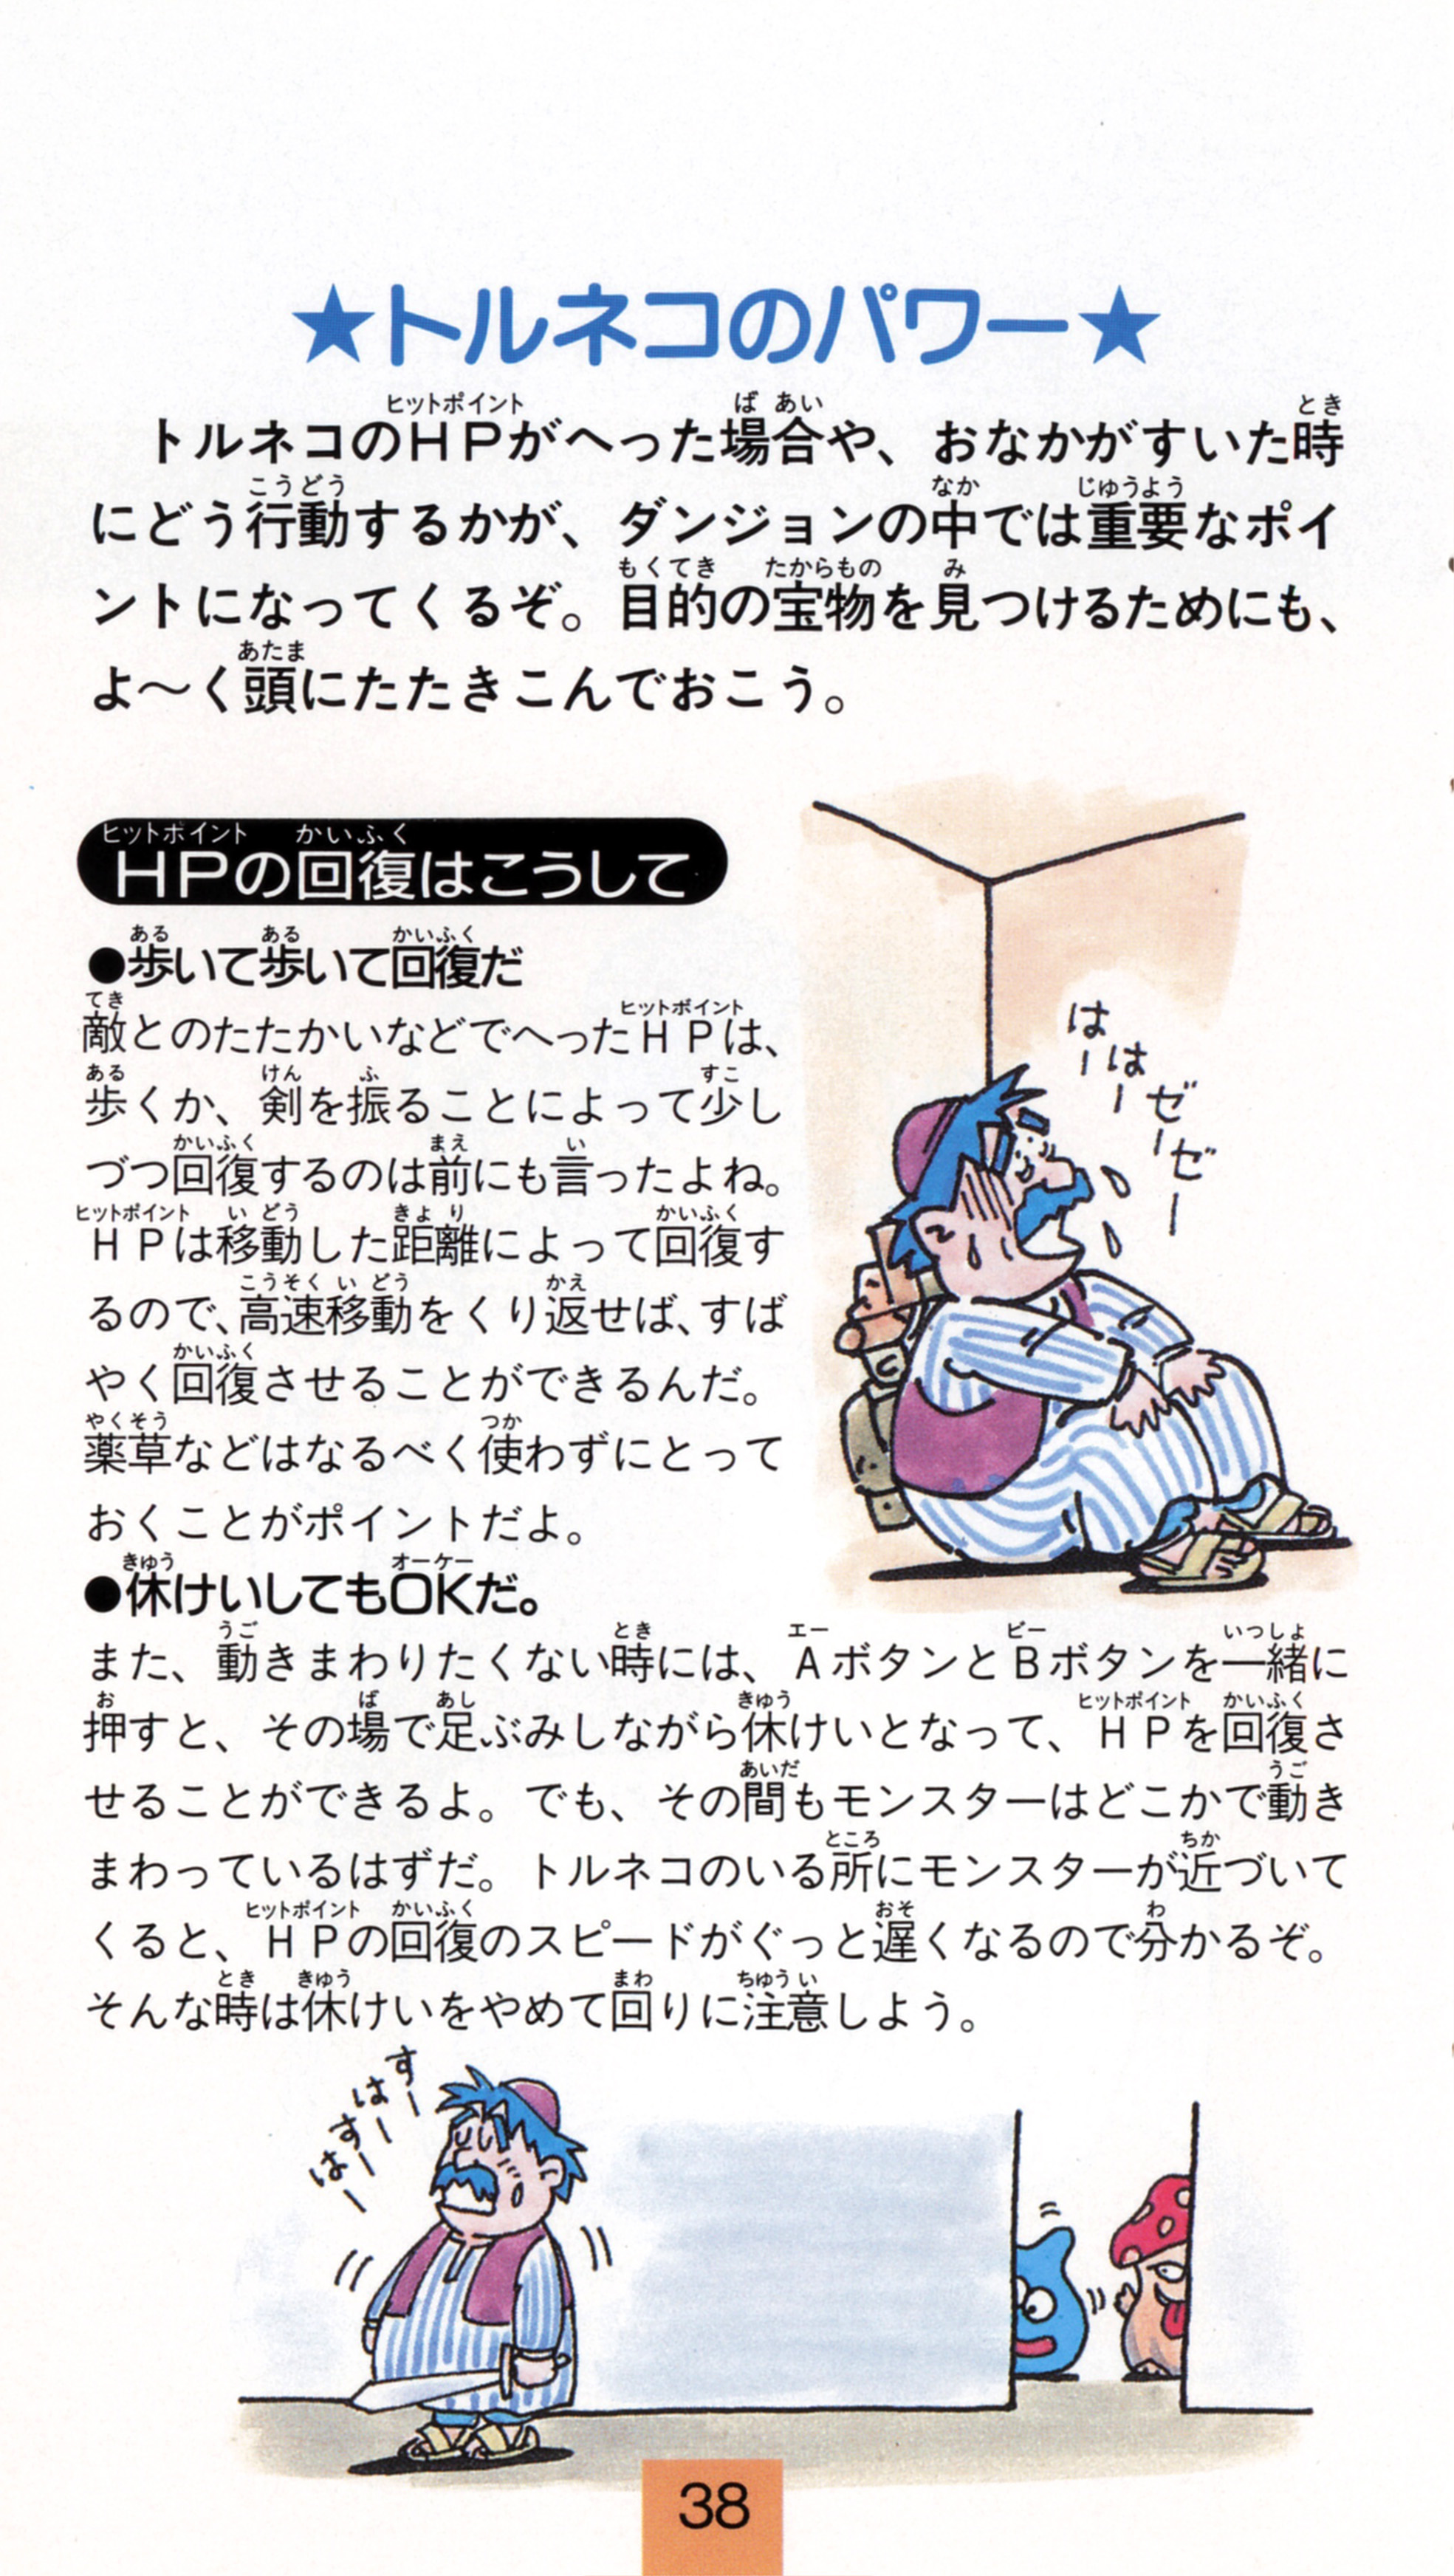 Torneko No Daibouken - Fushigi No Dungeon [SHVC-TQ] (Super Famicom 